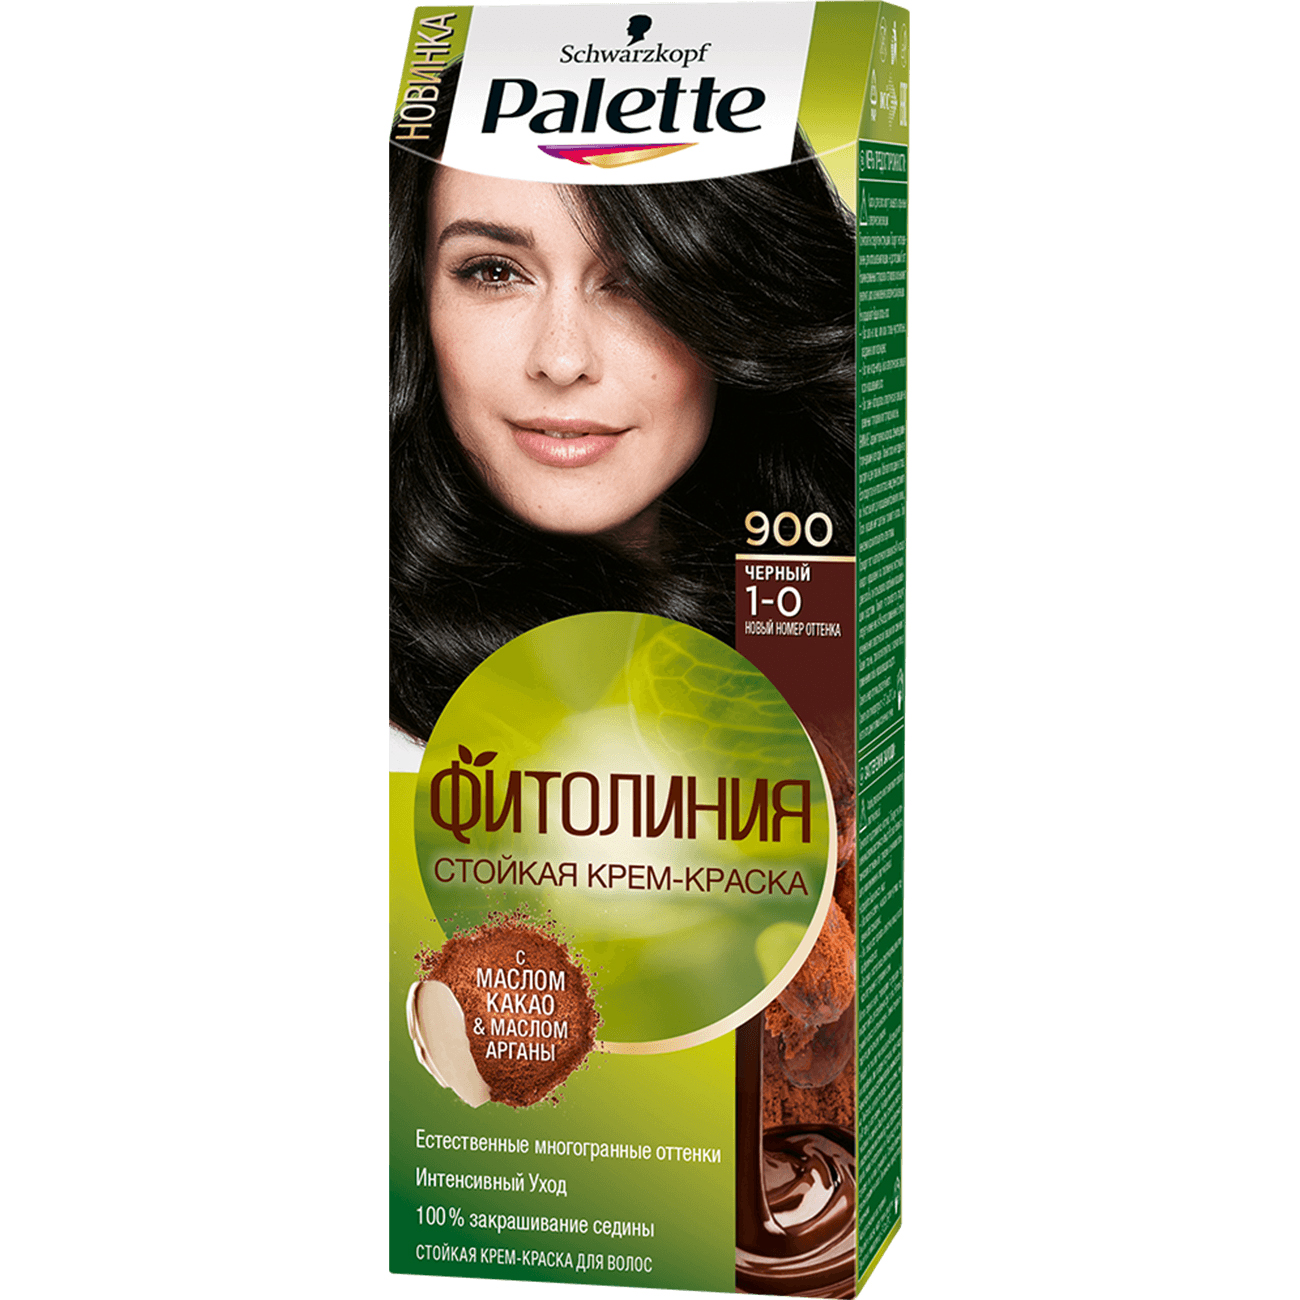 фото Крем-краска для волос palette фитолиния 1-0, 900 черный 110 мл